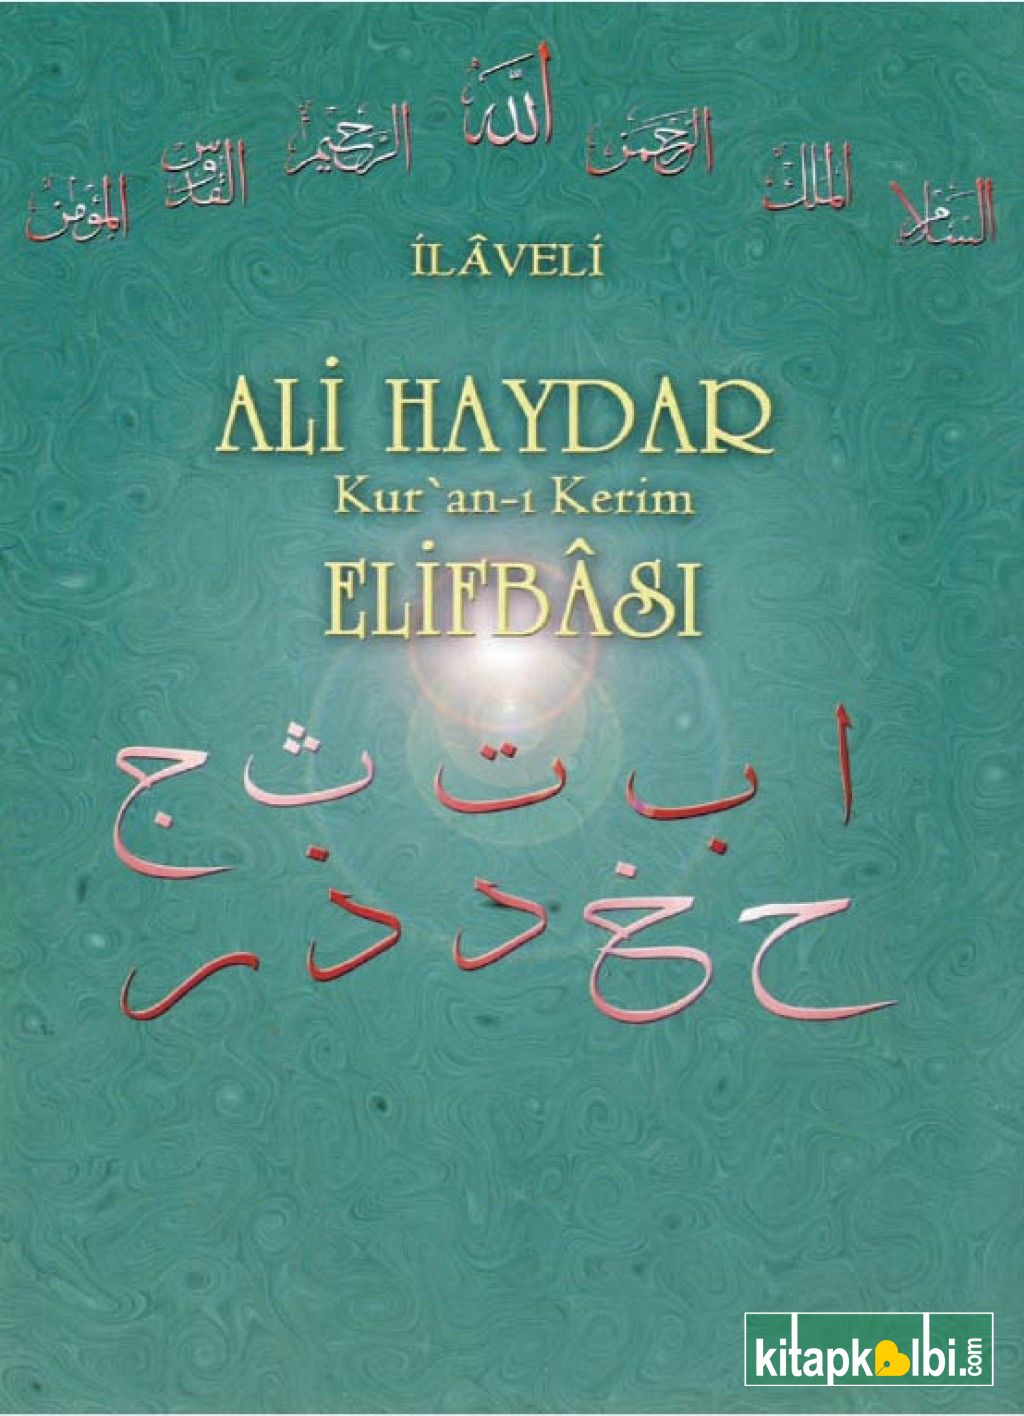 Ali Haydar Elifbası İlaveli Yasin